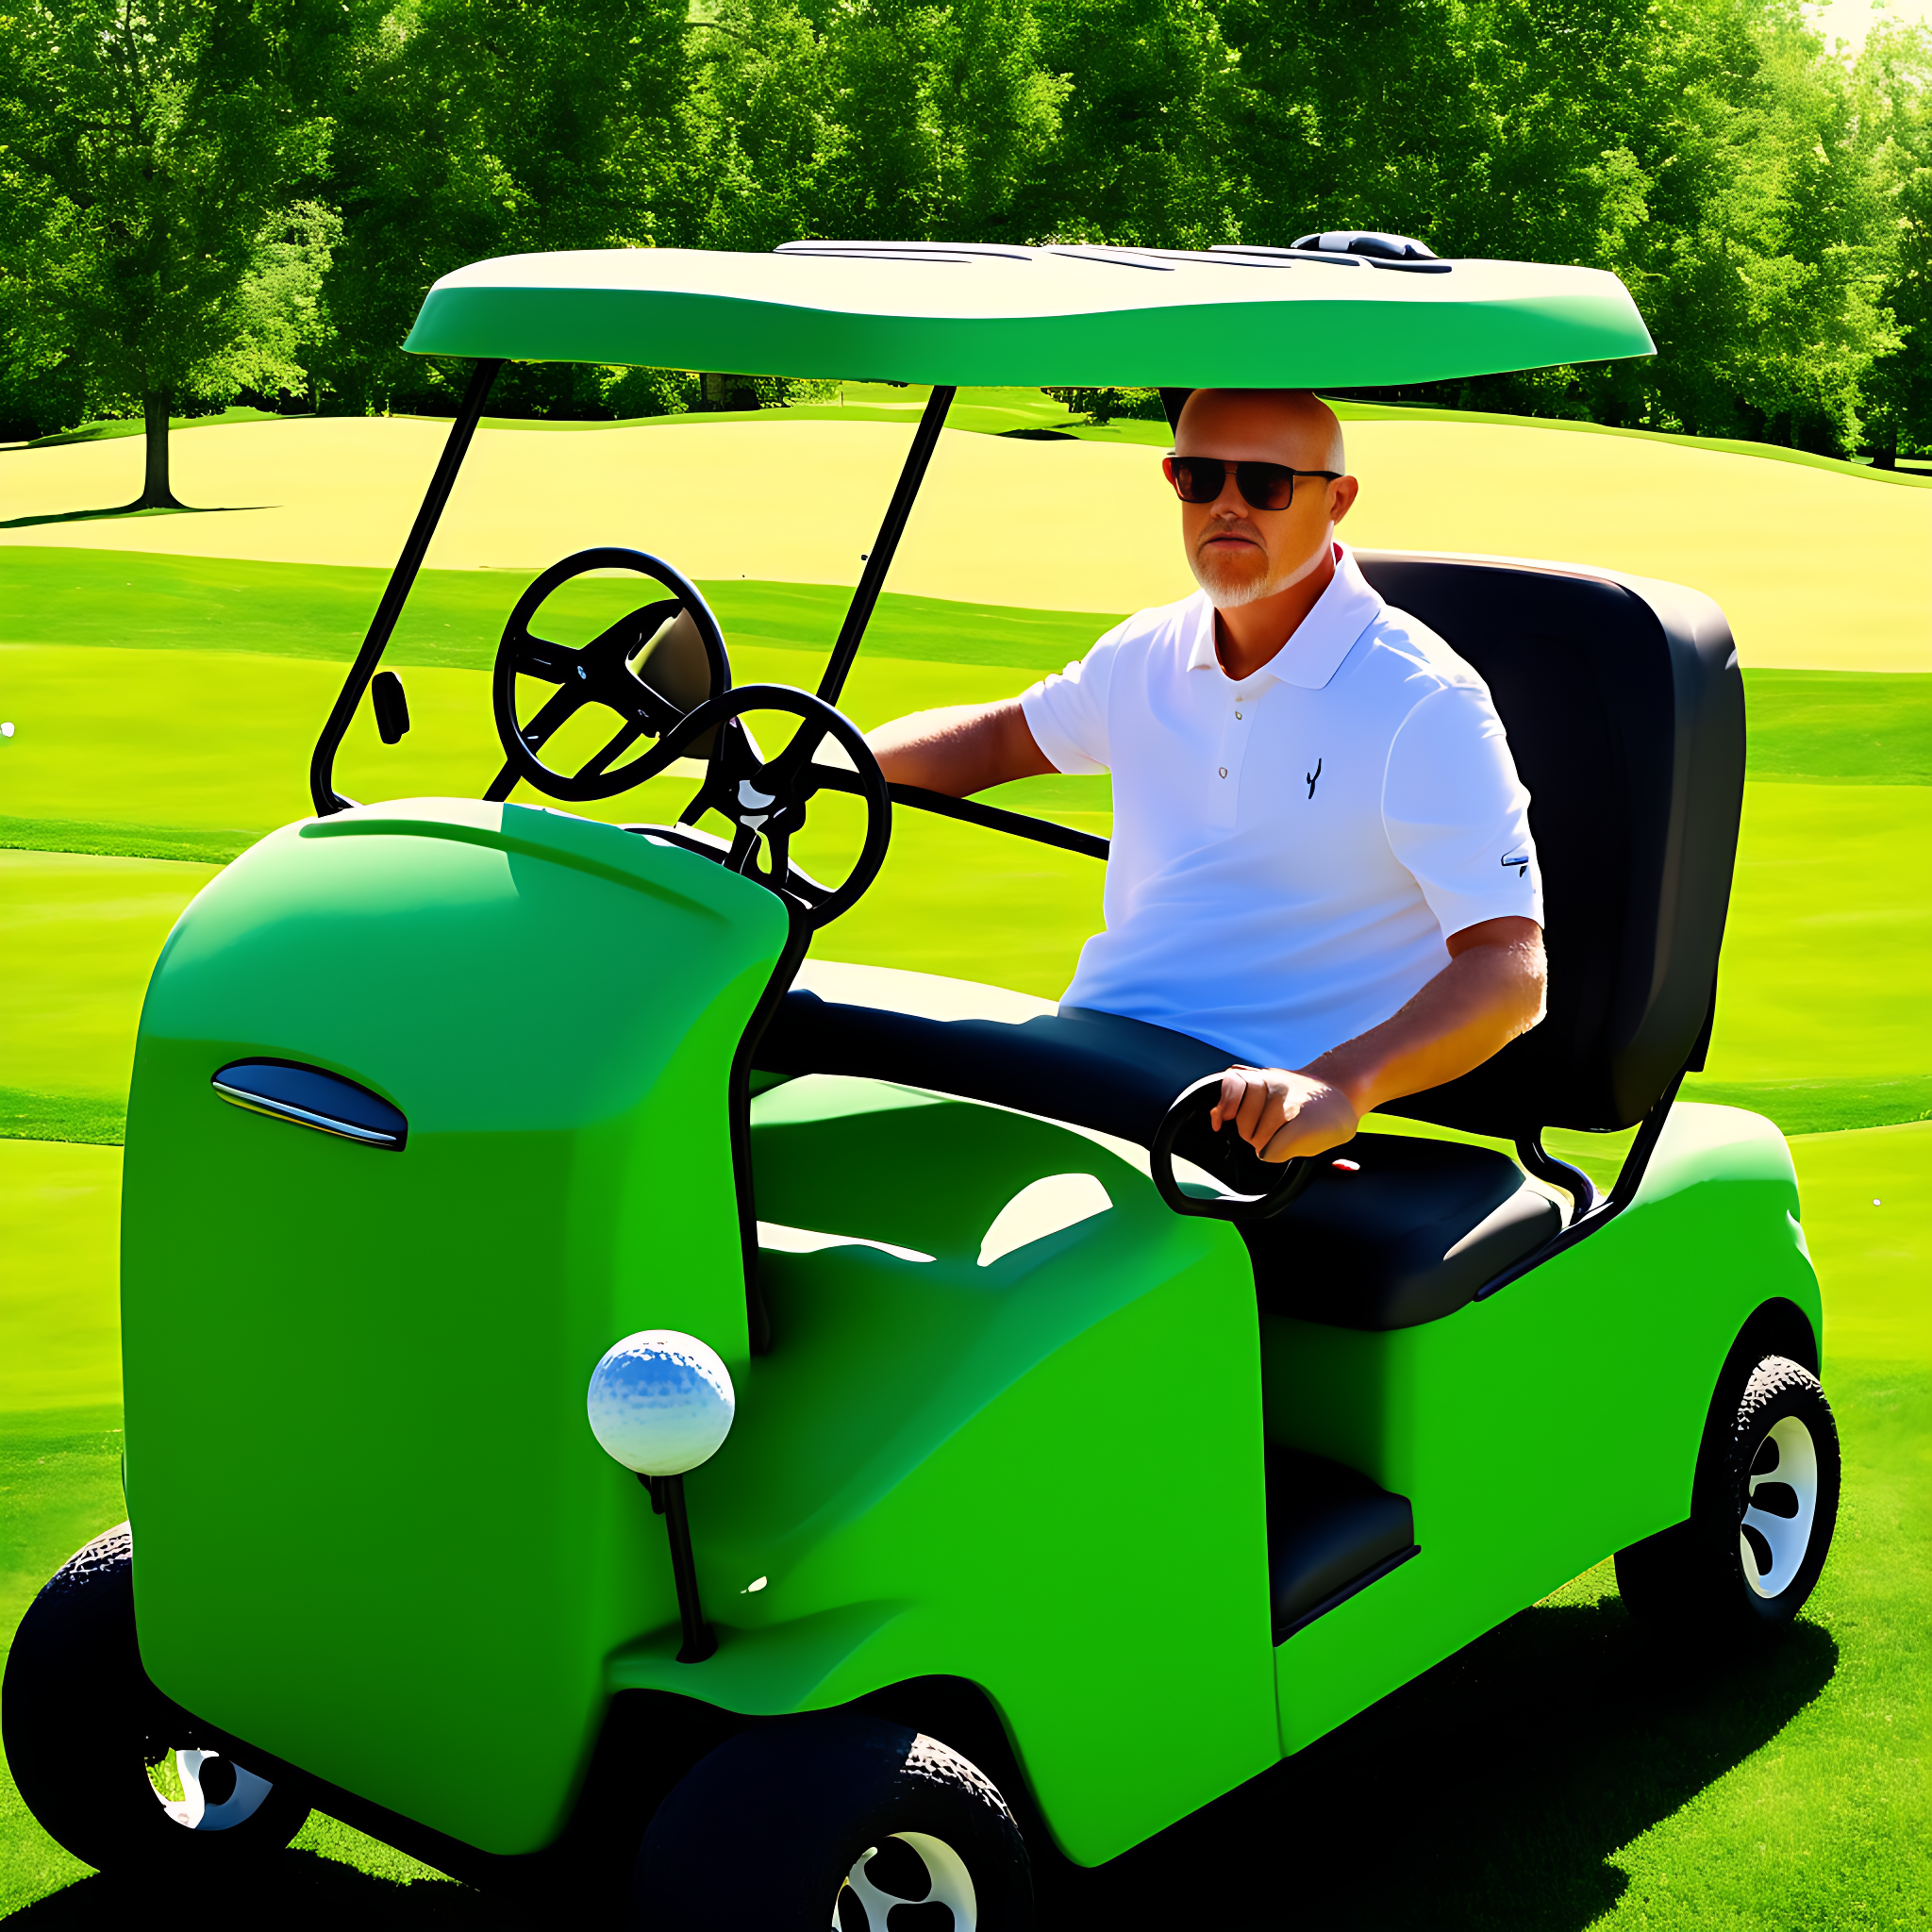 gray-golf-cart-a-men-sunshine-grass-art-photo-detail-face-961584989